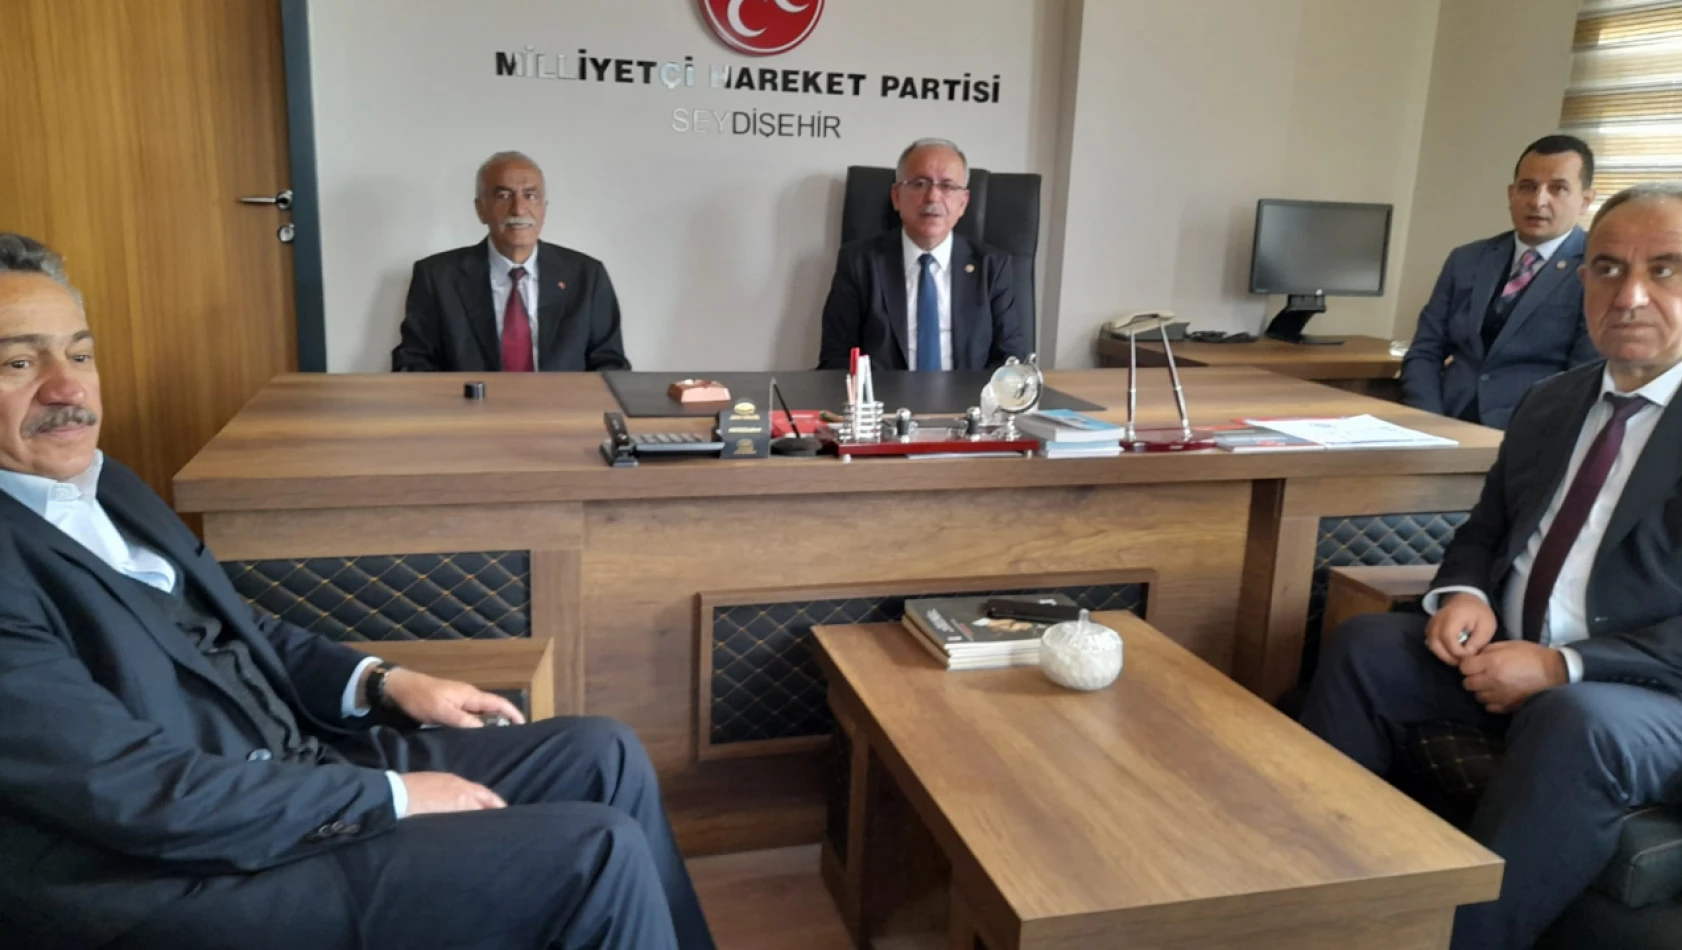 MHP Genel Başkan Yardımcısı Mustafa Kalaycı, Seydişehir'de ziyaretlerde bulundu